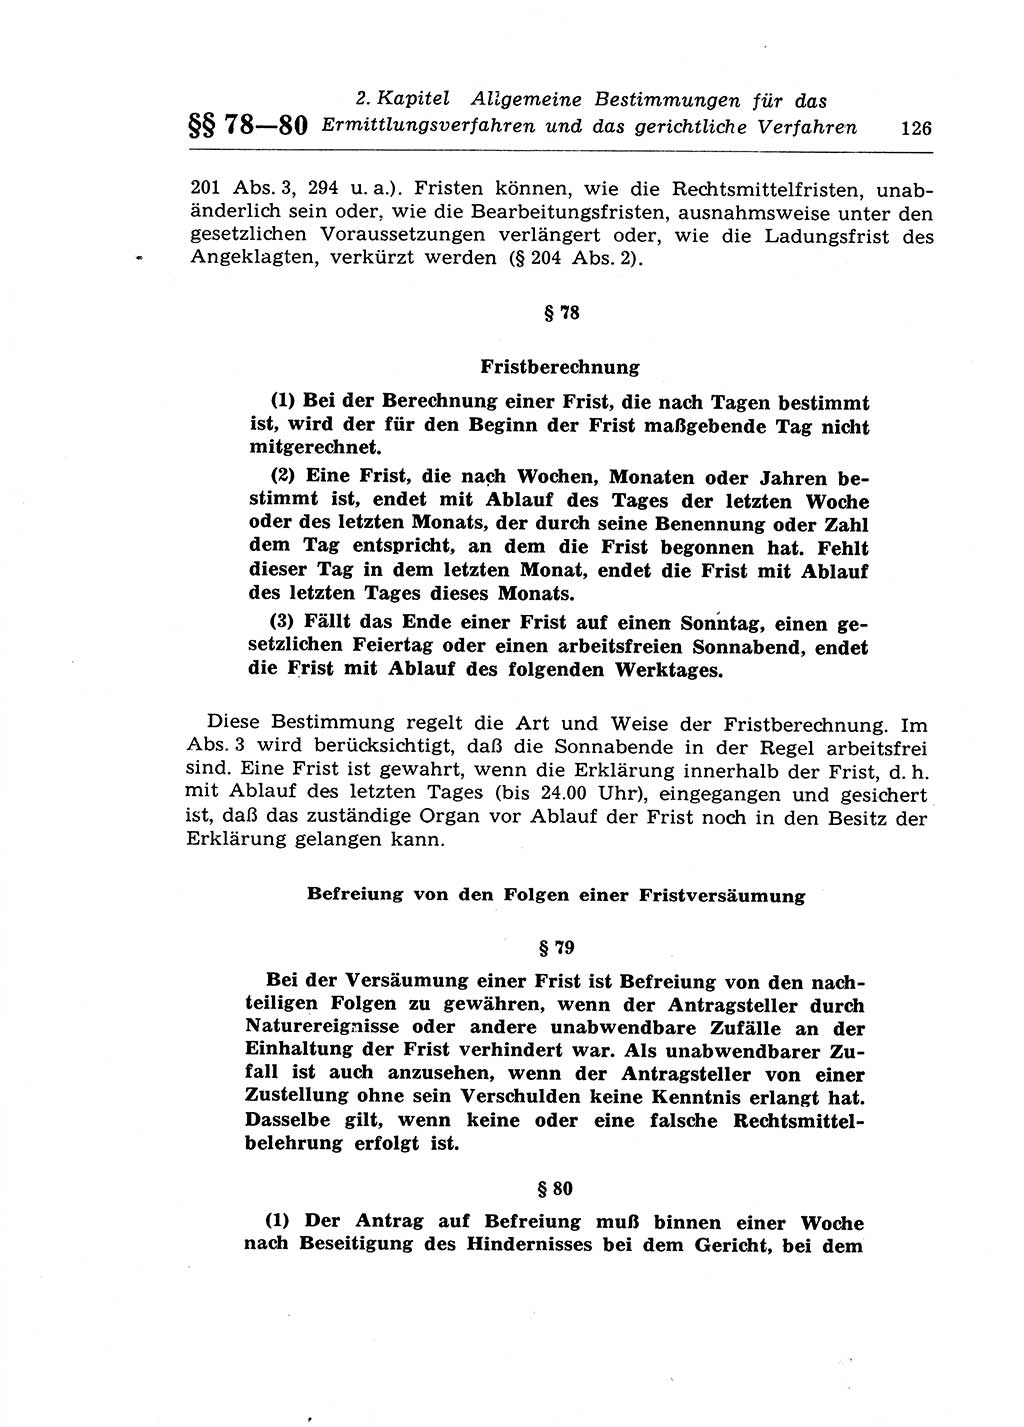 Strafprozeßrecht der DDR (Deutsche Demokratische Republik), Lehrkommentar zur Strafprozeßordnung (StPO) 1968, Seite 126 (Strafprozeßr. DDR Lehrkomm. StPO 19688, S. 126)